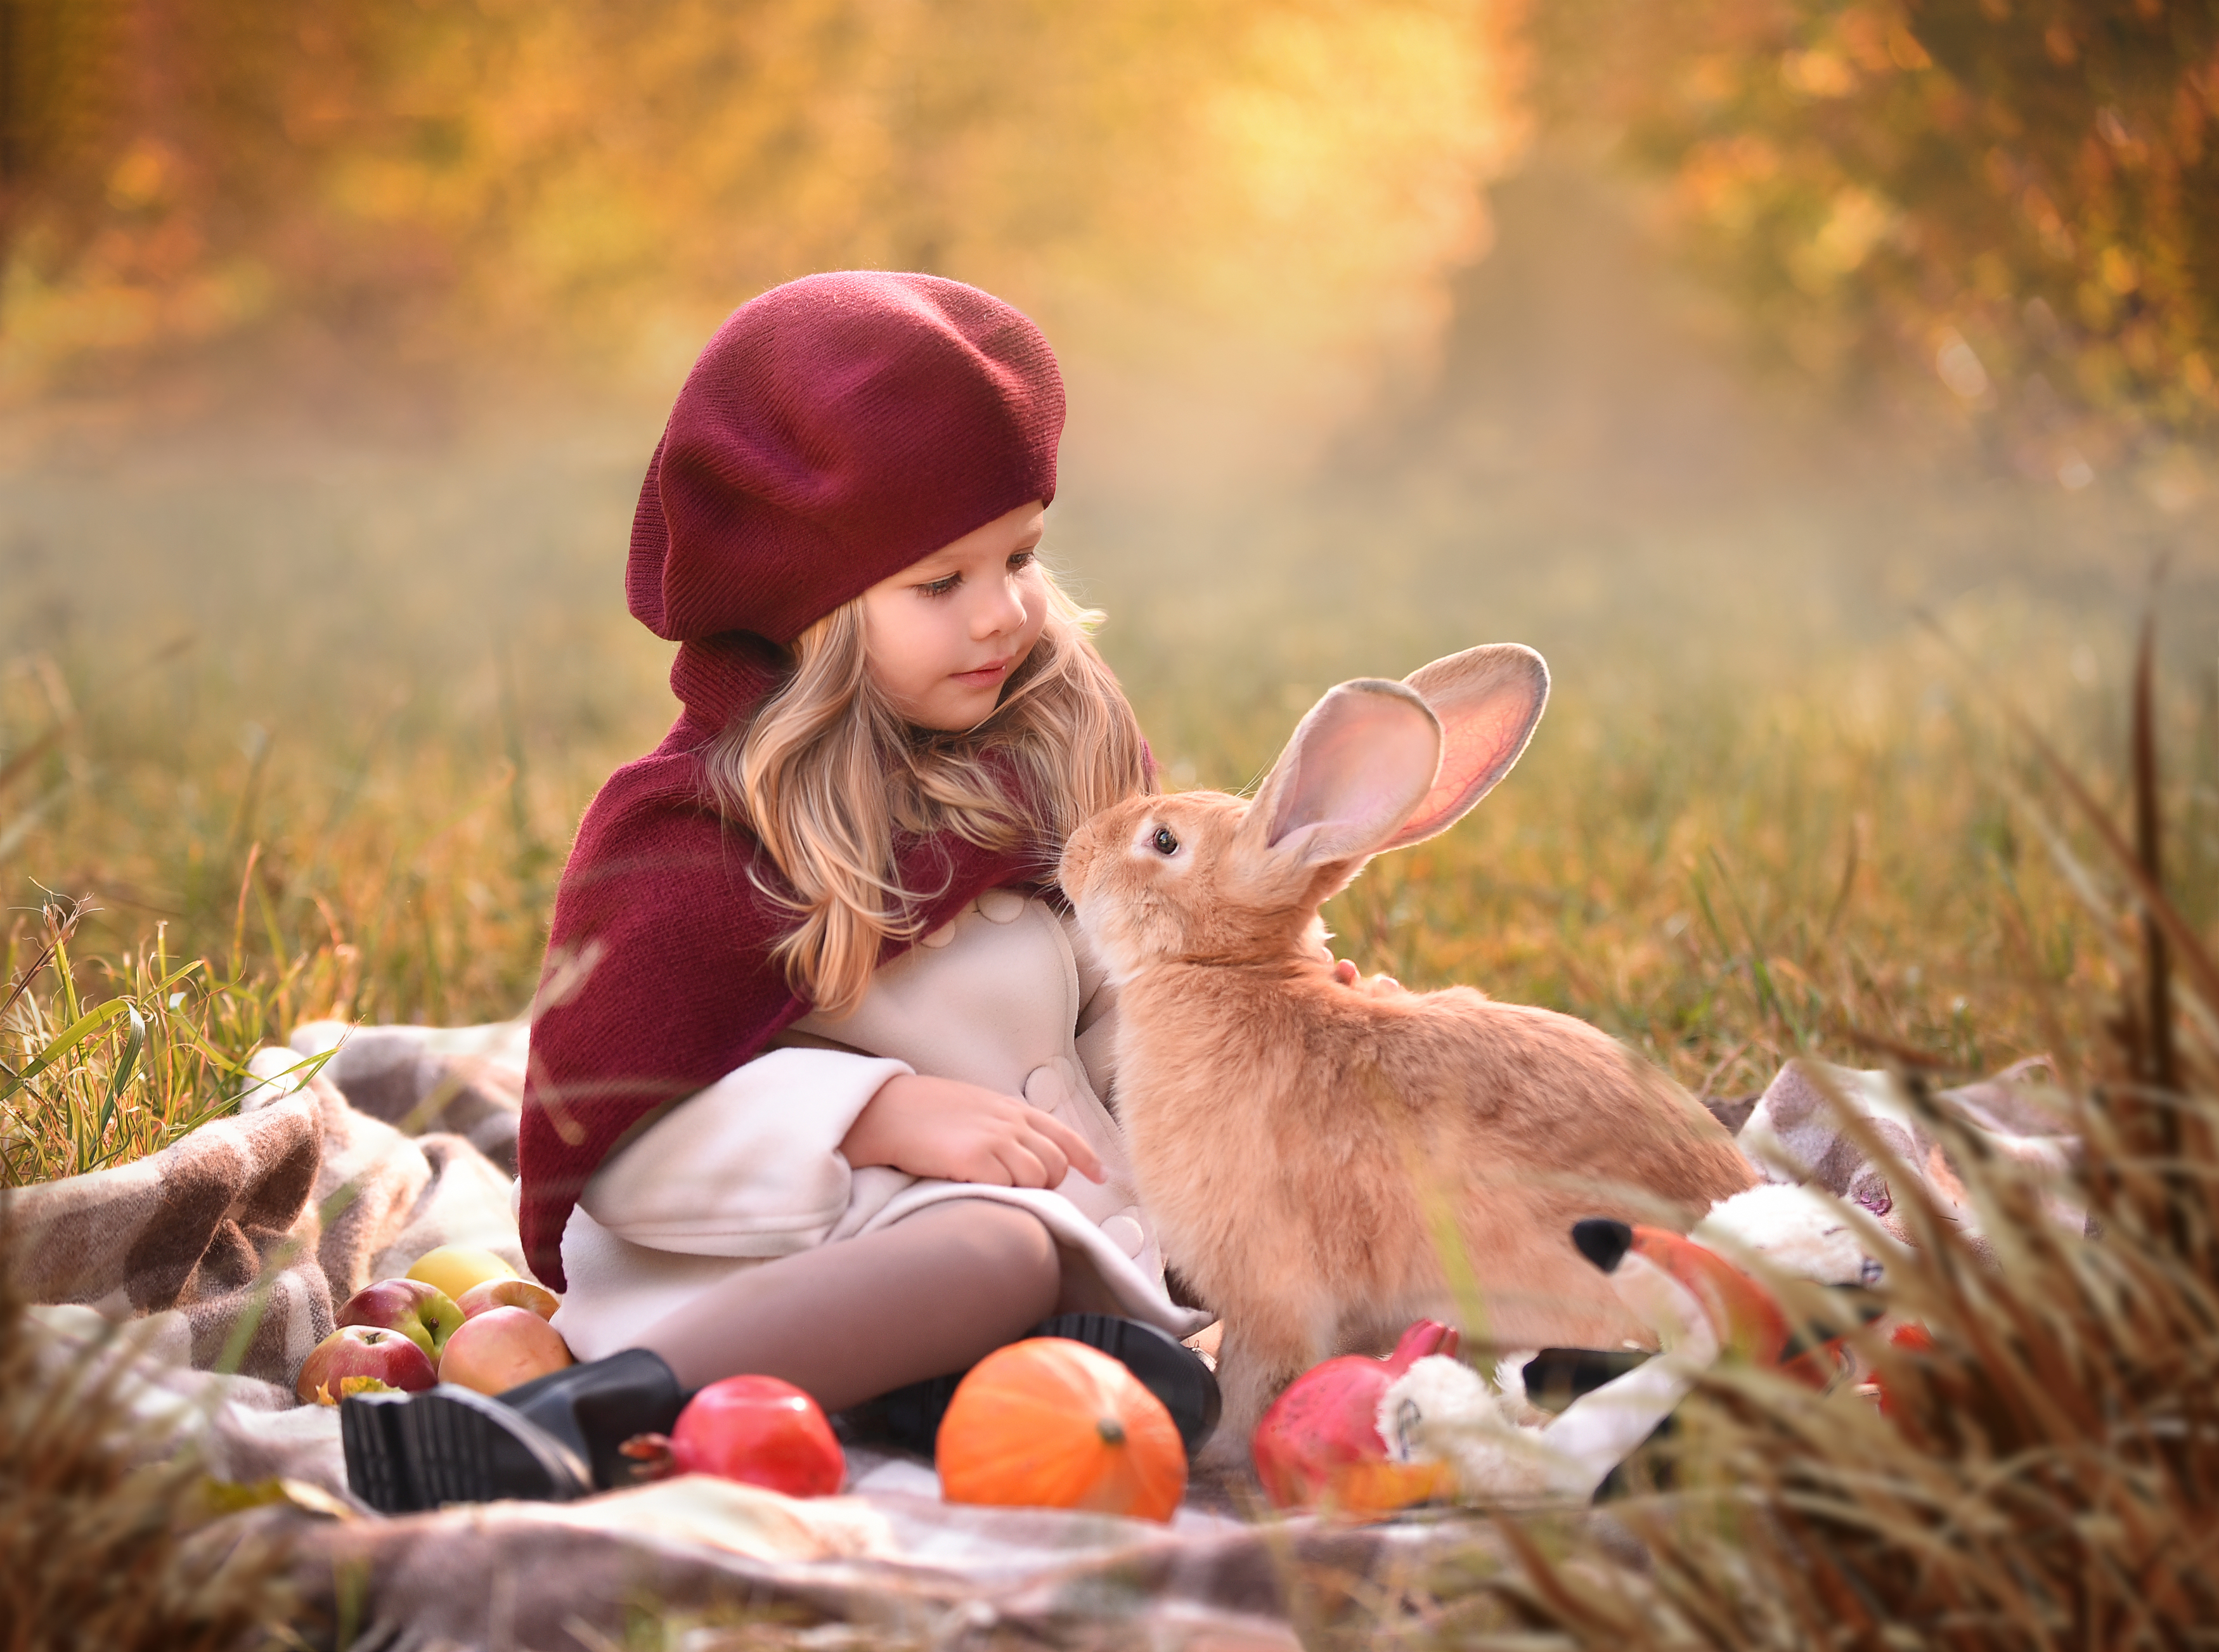 Съёмка с животными,  дети, ты и я, постановка  кролик, зайчик, Виктория Андреева